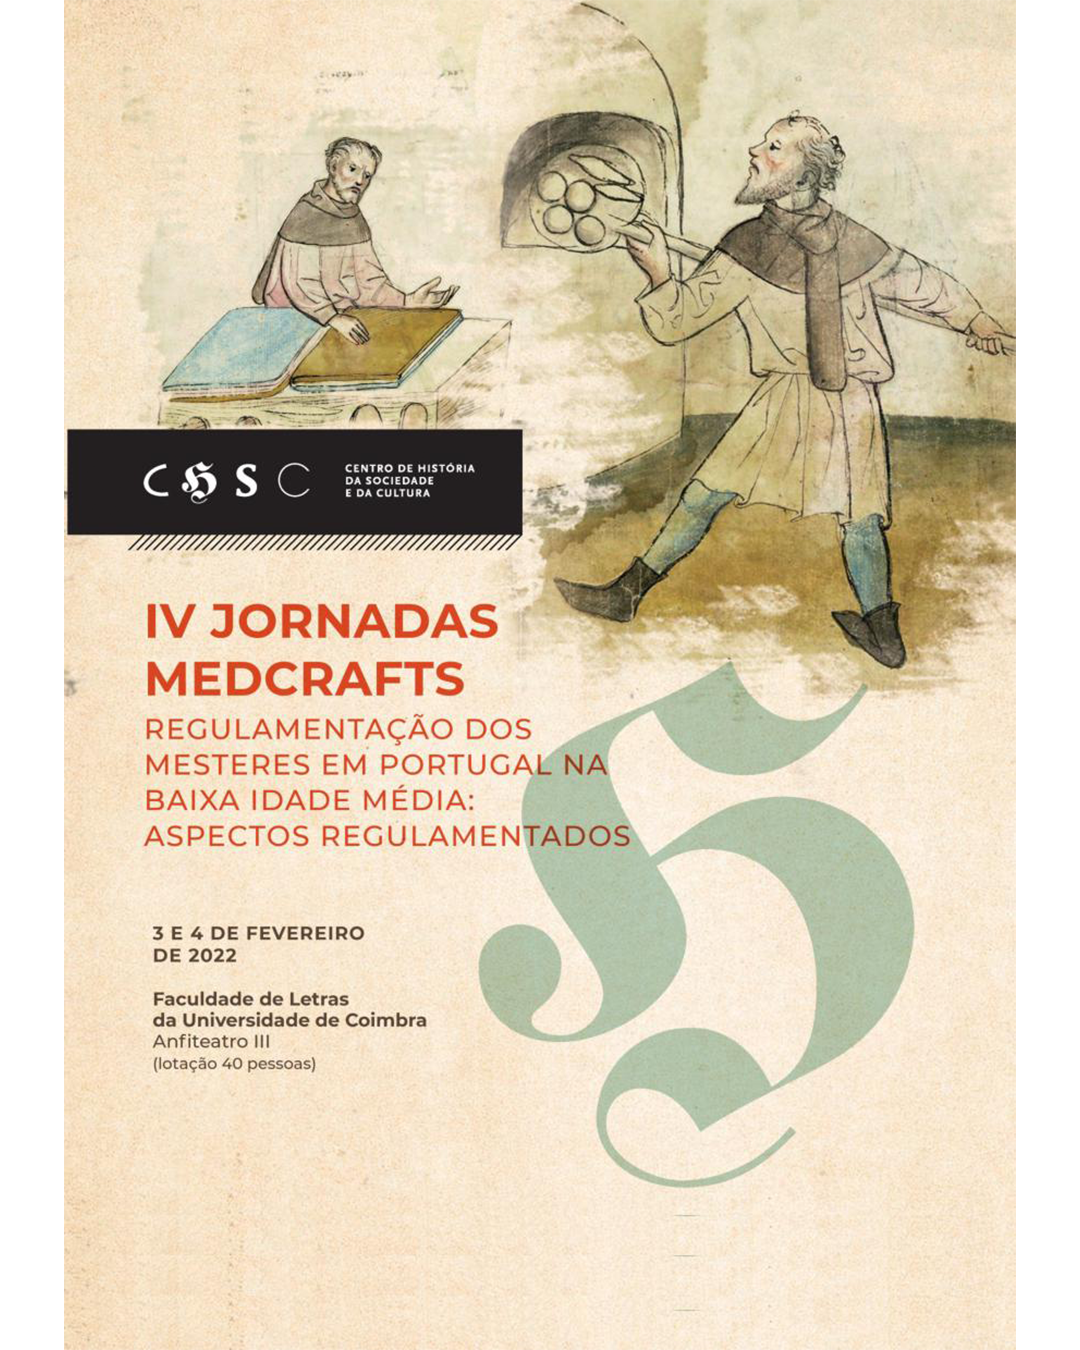 IV Jornadas Medcrafts "Regulamentação dos mesteres em Portugal na Baixa Idade Média: aspectos regulamentados" image